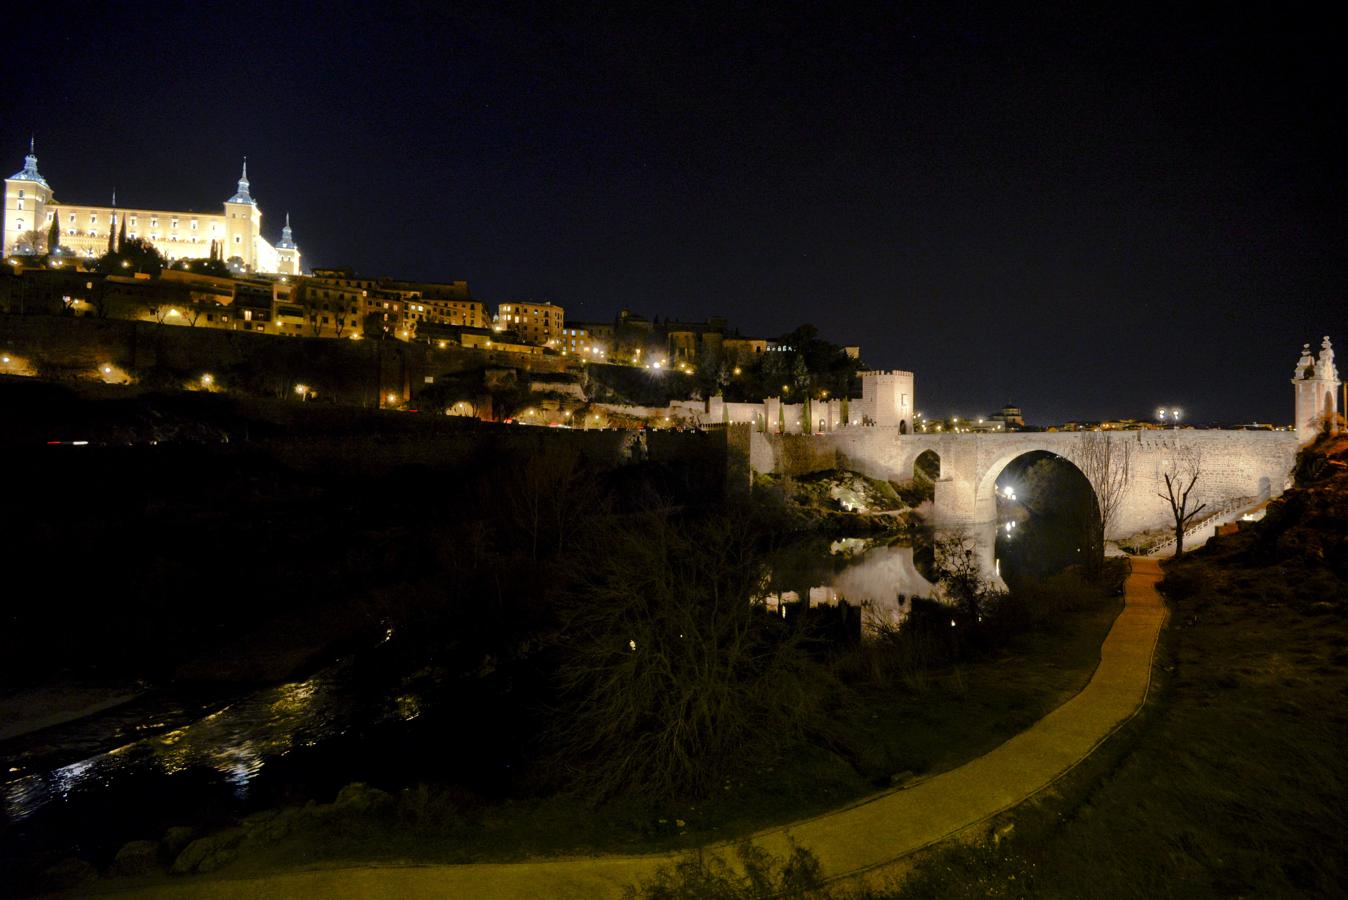 El puente de Alcántara luce una nueva iluminación artística